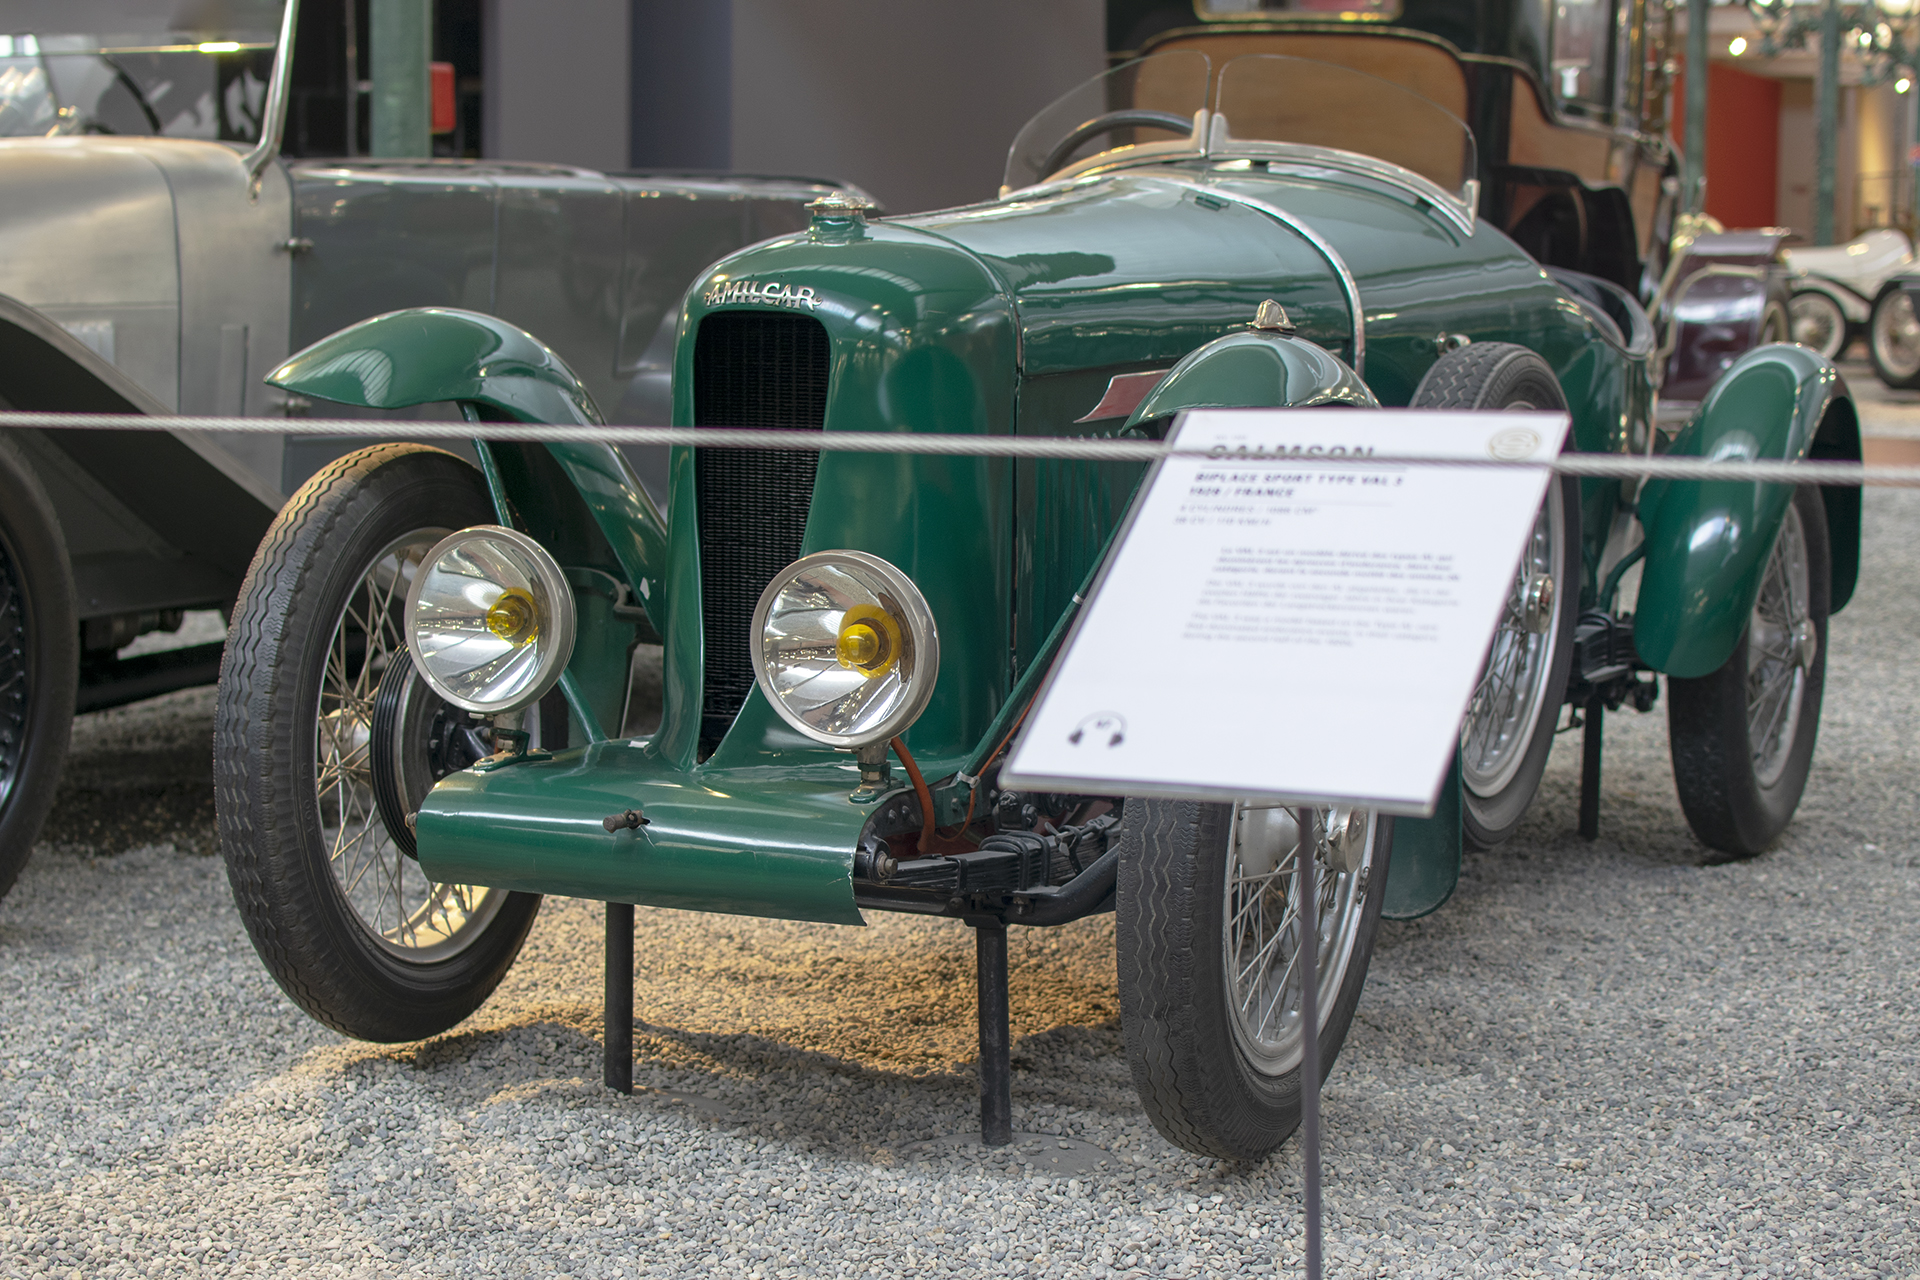 Amilcar CGSS biplace sport 1926 - Cité de l'automobile, Collection Schlumpf, Mulhouse, 2020 